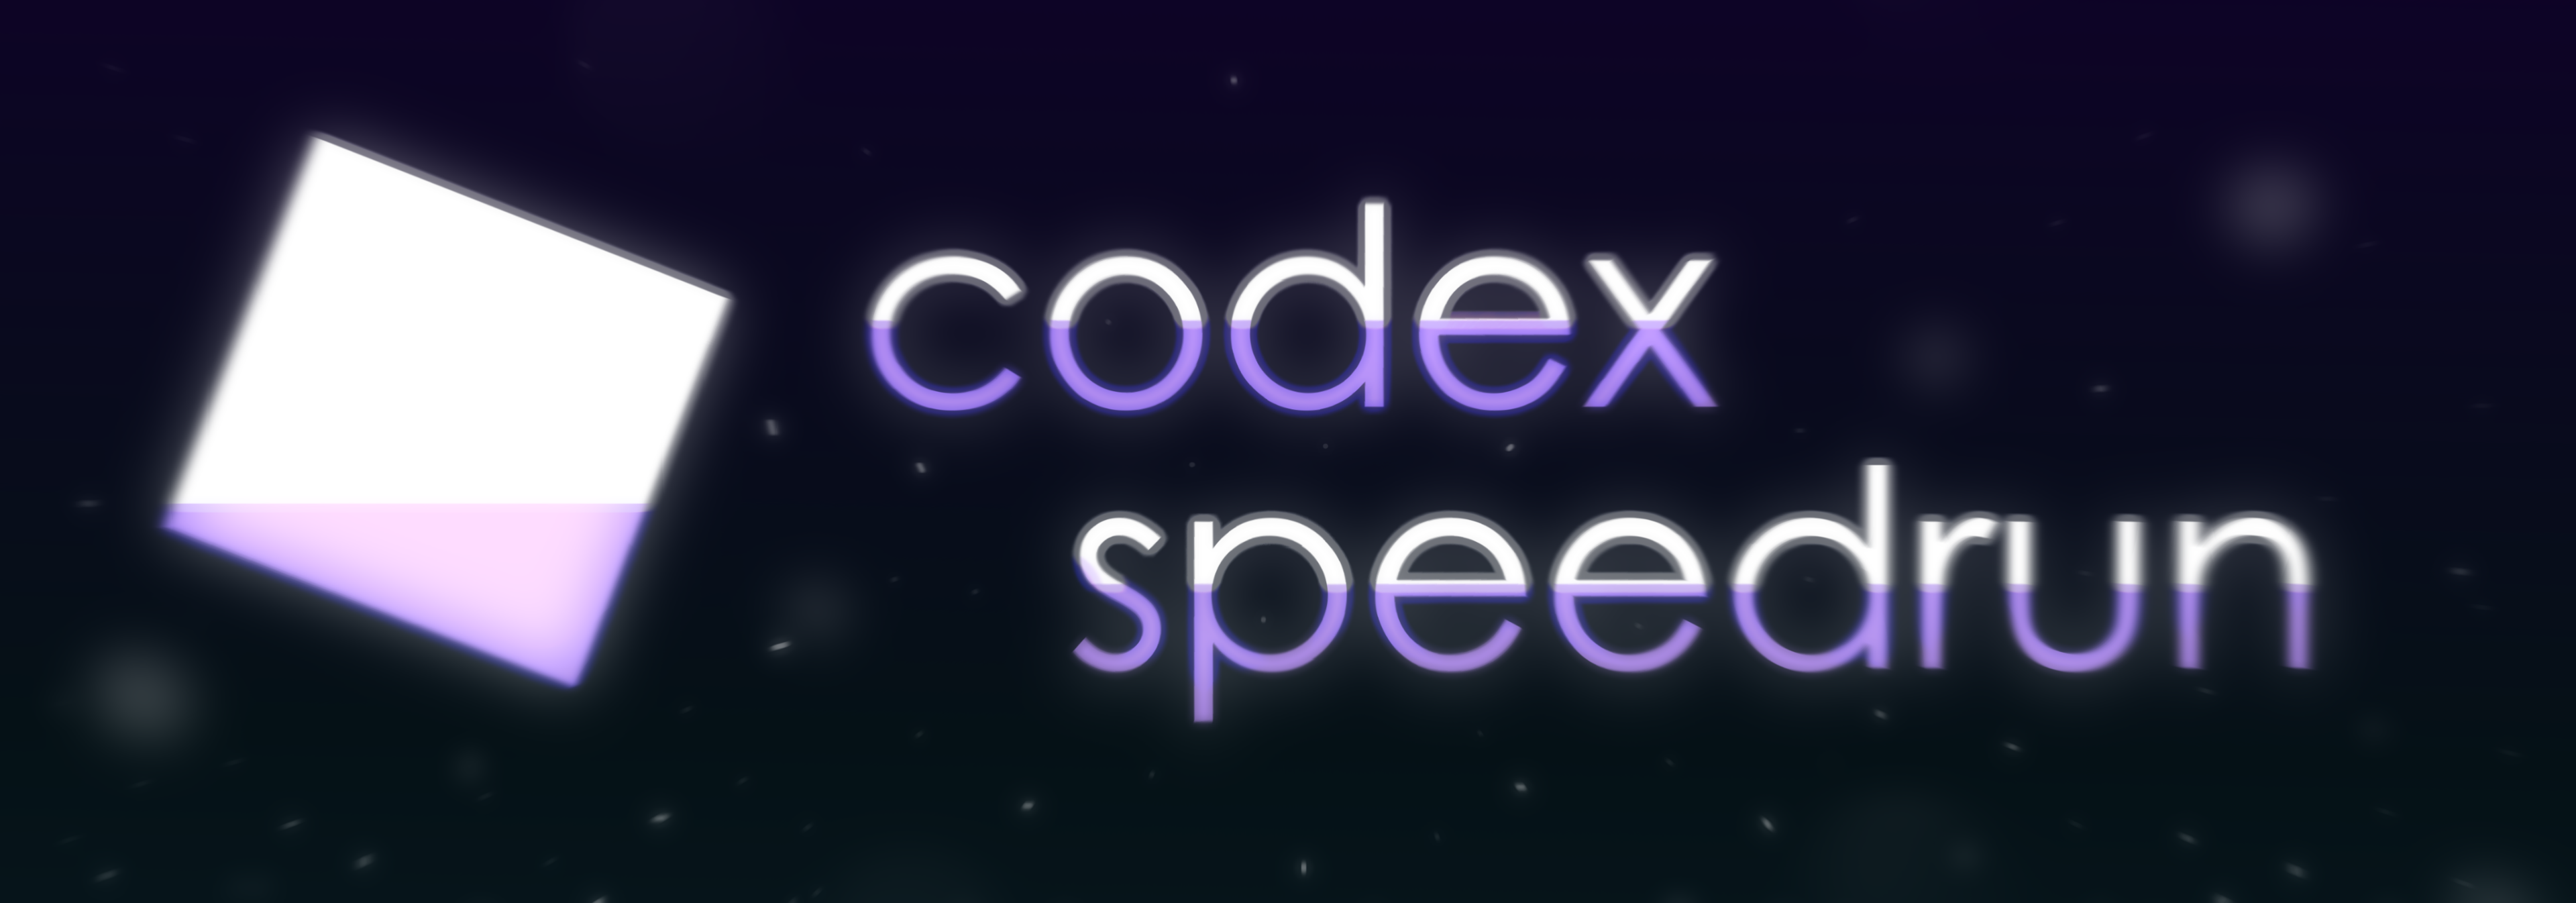 Codex Speedrun